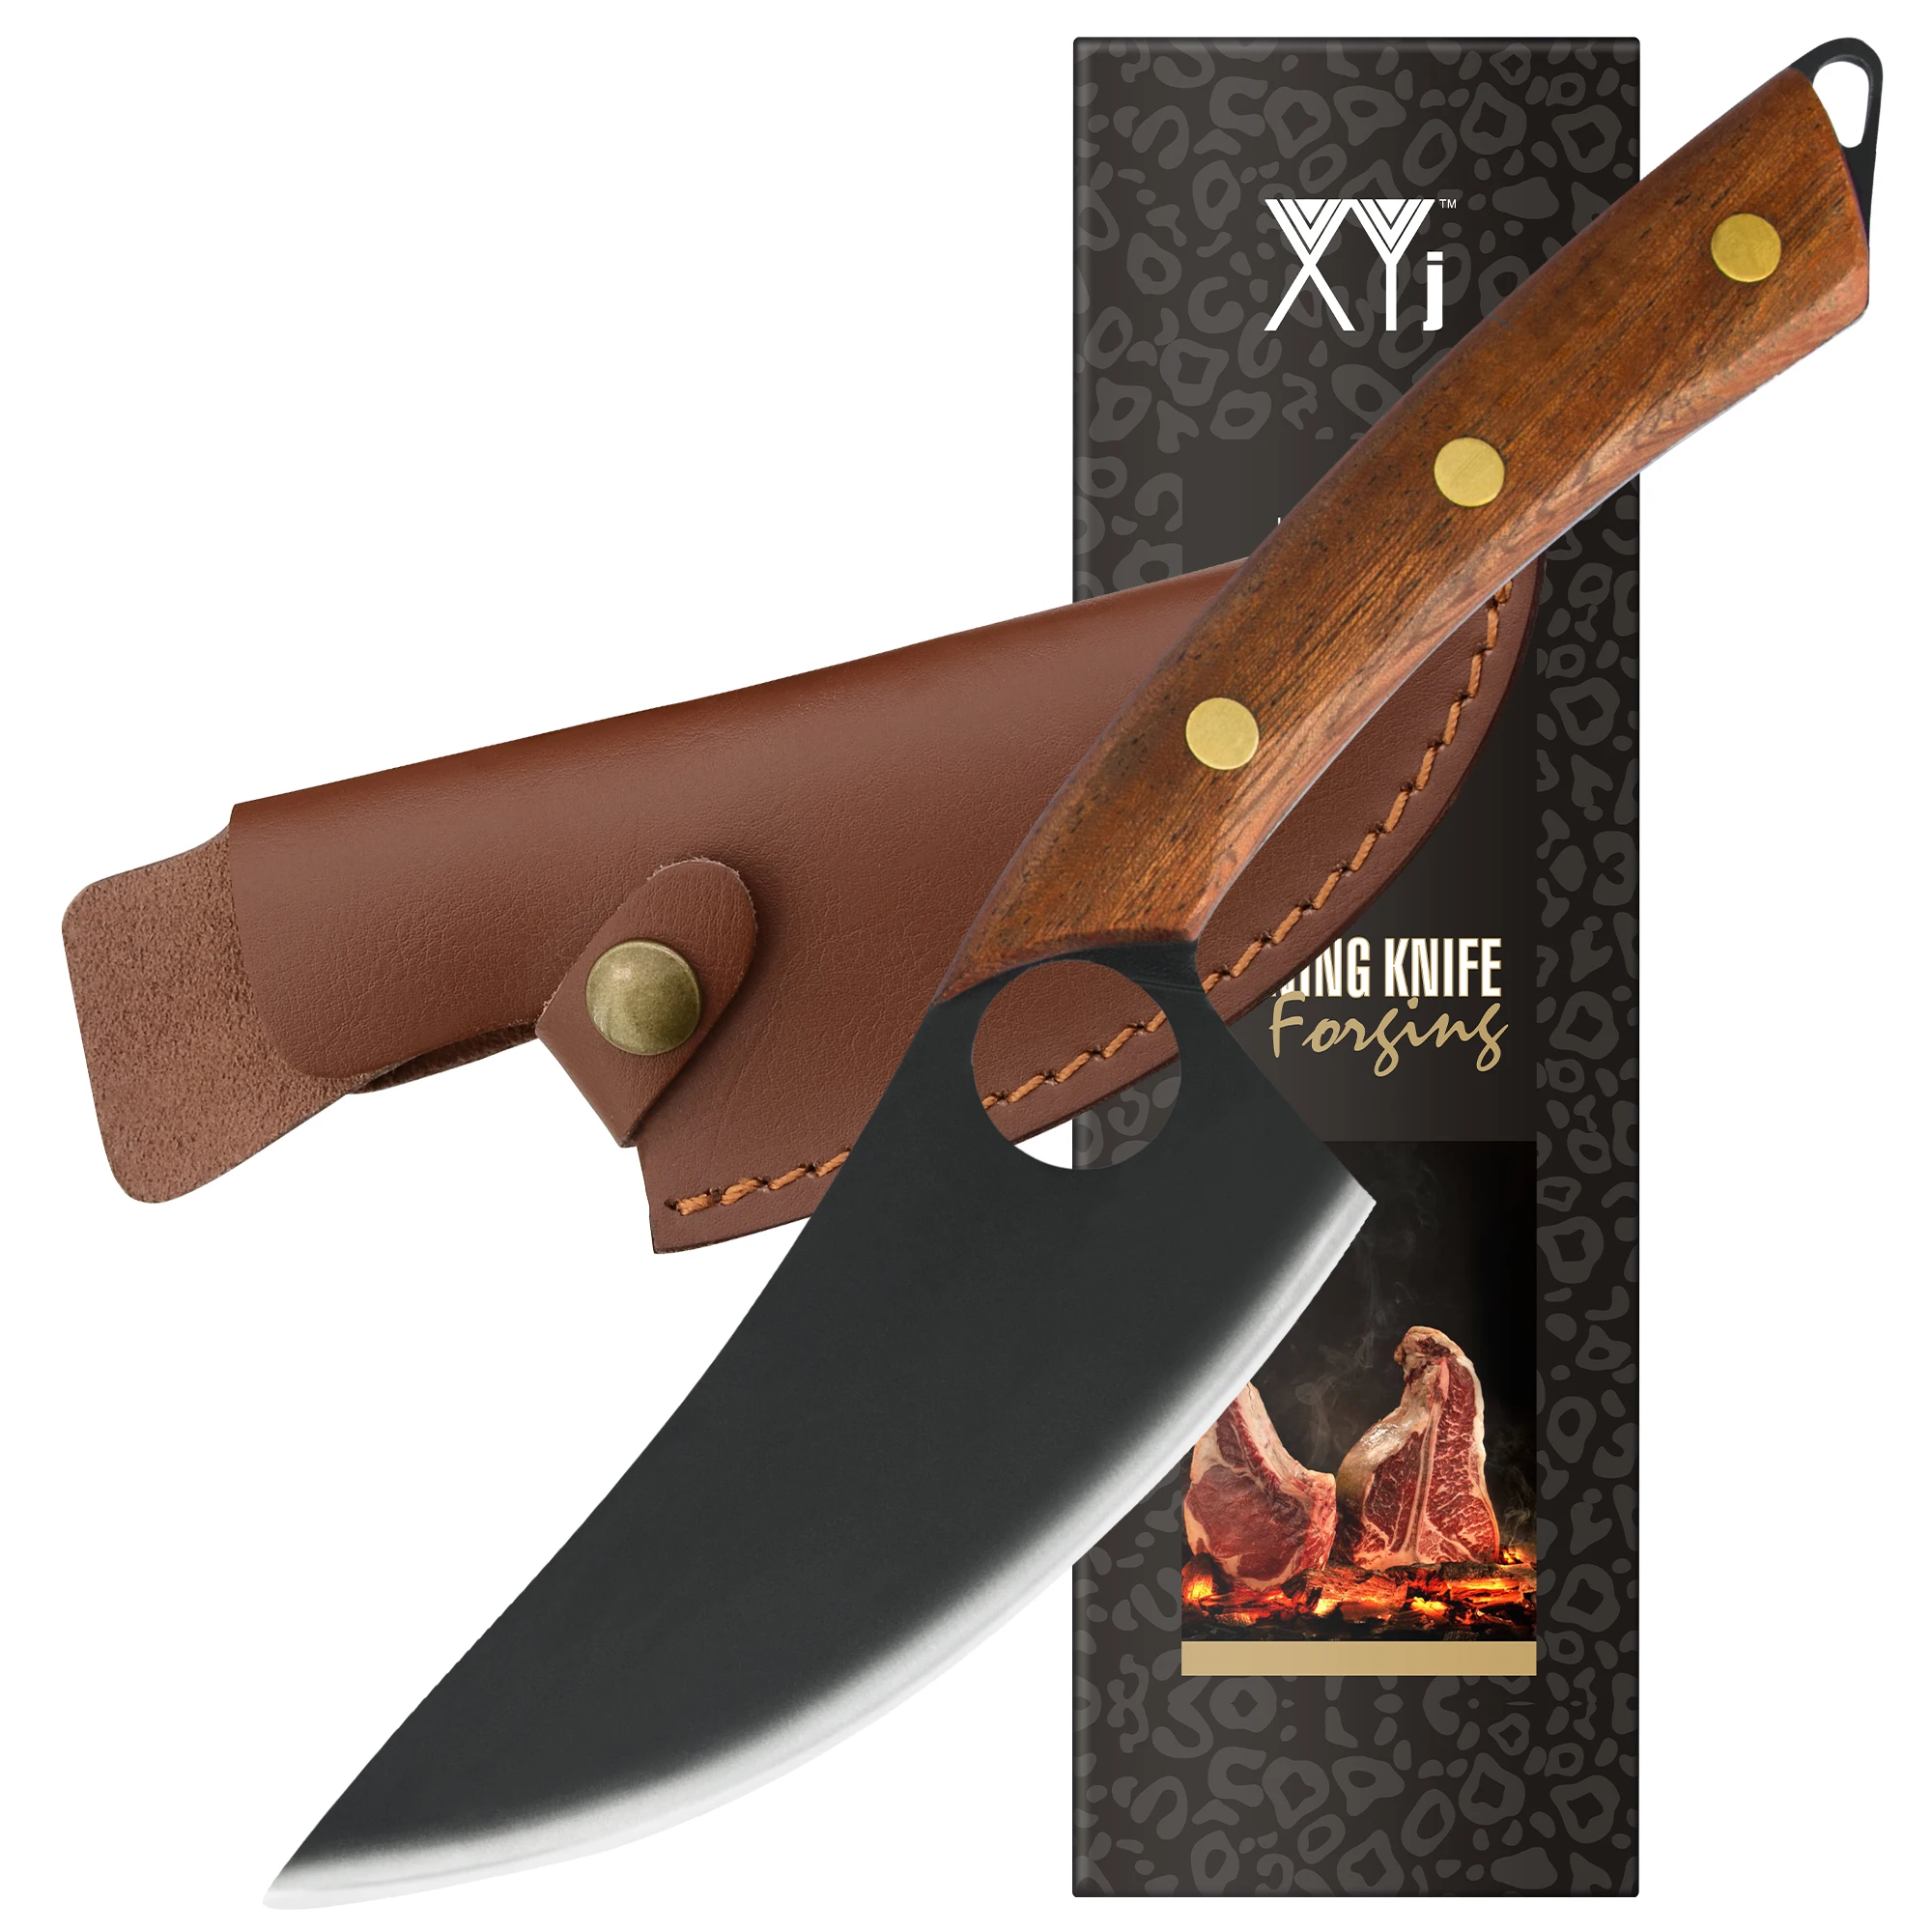 

XYJ Full Tang 5-дюймовый нож из нержавеющей стали для обвалки, нож мясника шеф-повара с кожаным футляром, ремнем и петлей для переноски мяса, мясниц...